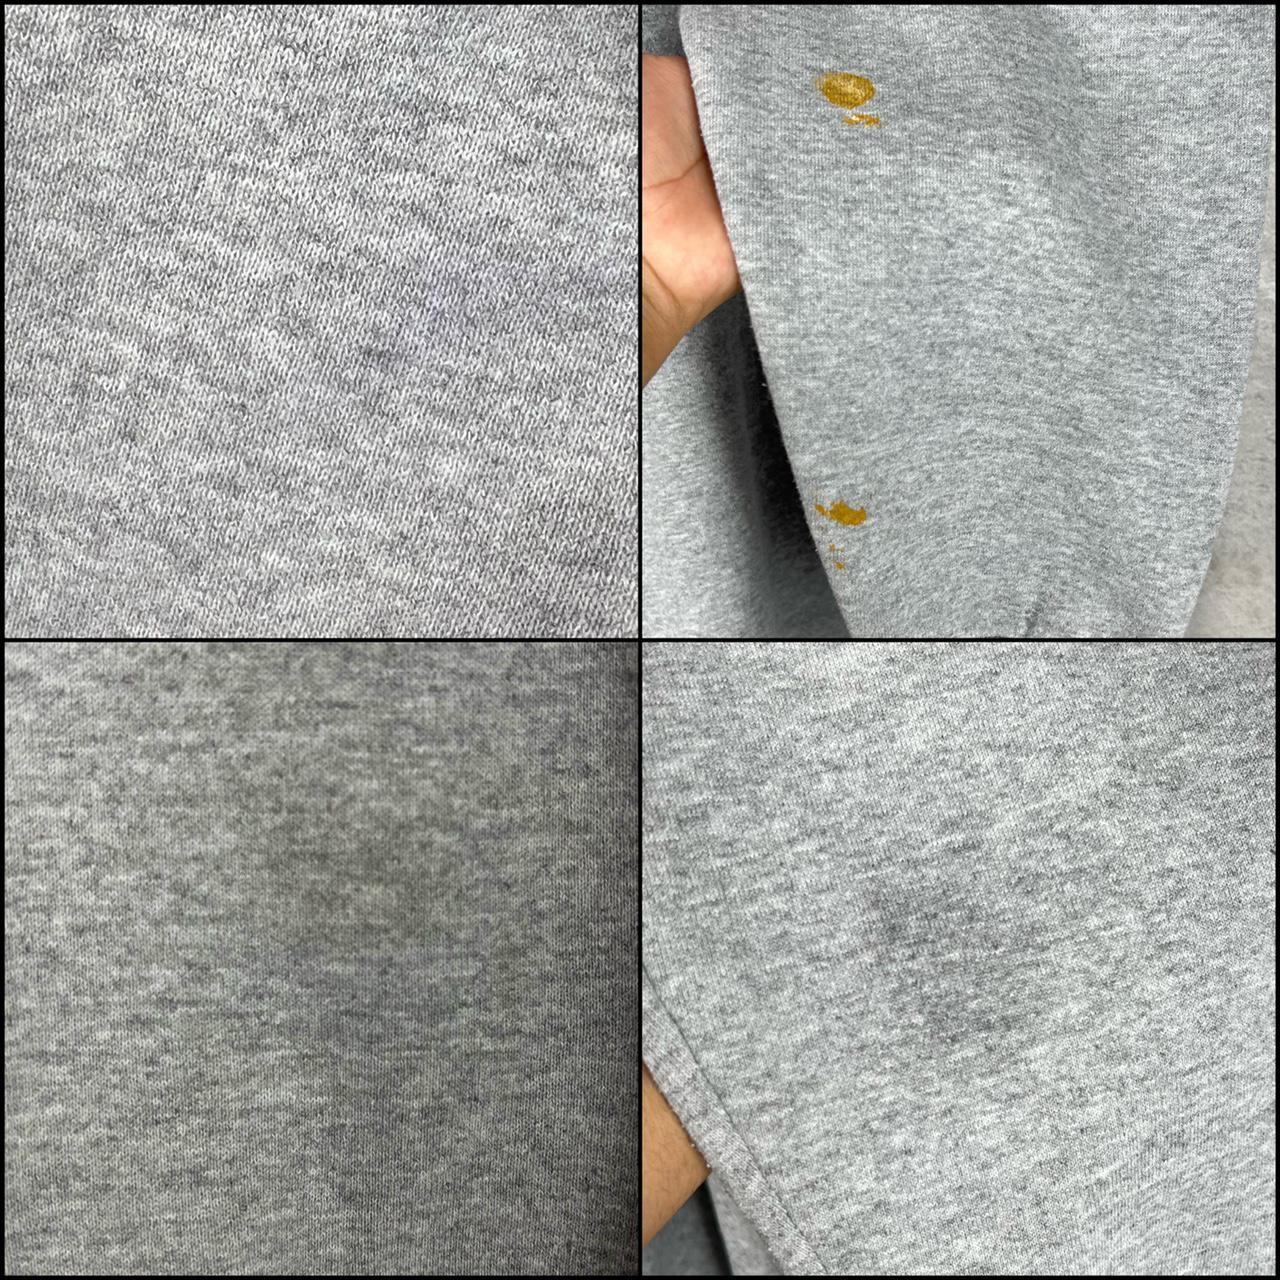 Lee Men's Grey and Orange Sweatshirt (3)